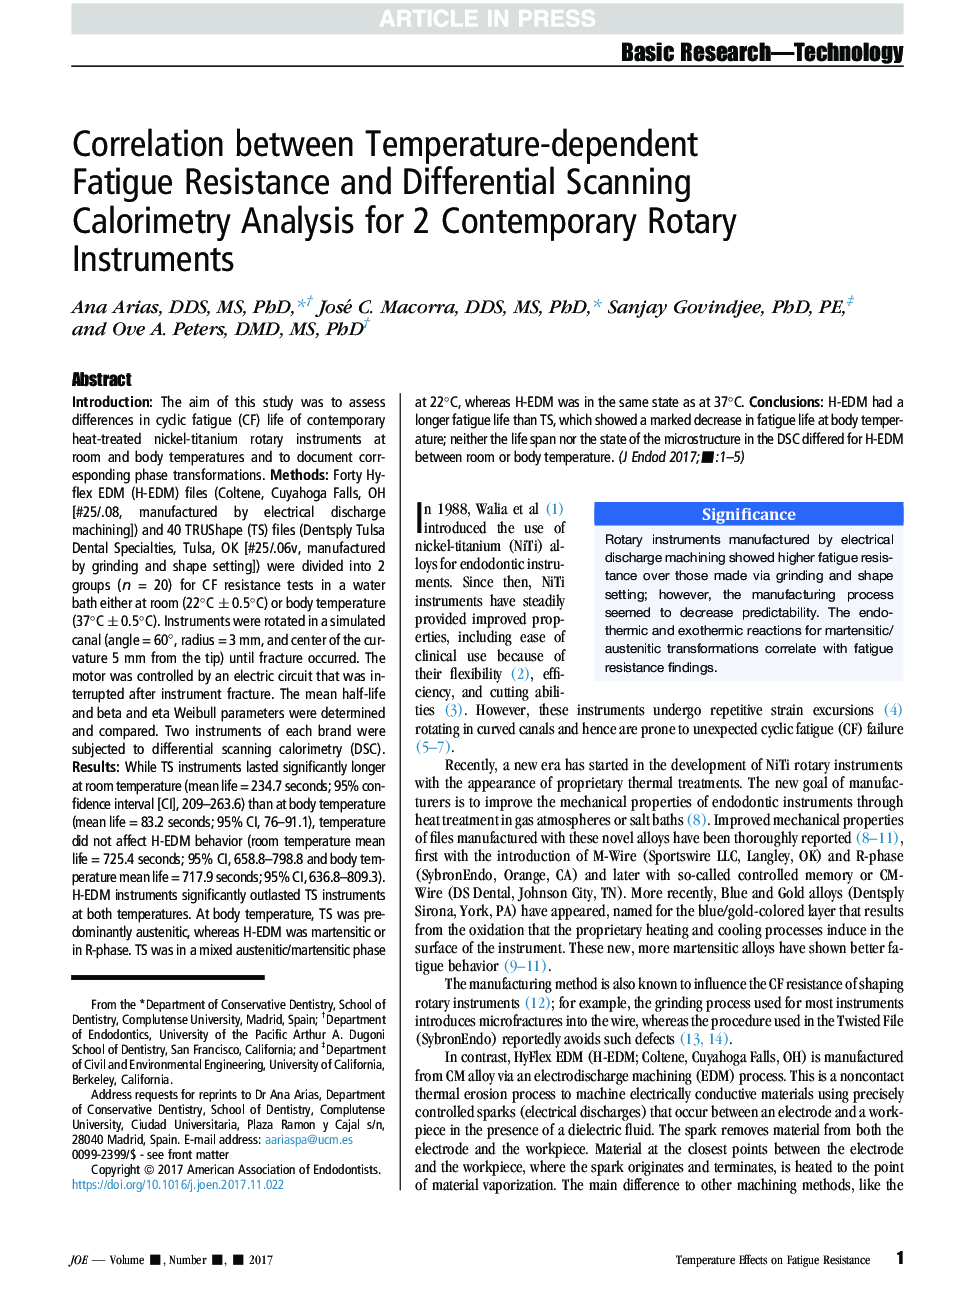 همبستگی مقاومت بین خستگی وابسته به دما و تحلیل کالوریمتری اسکن دیفرانسیل برای دو ابزار روتاری معاصر 